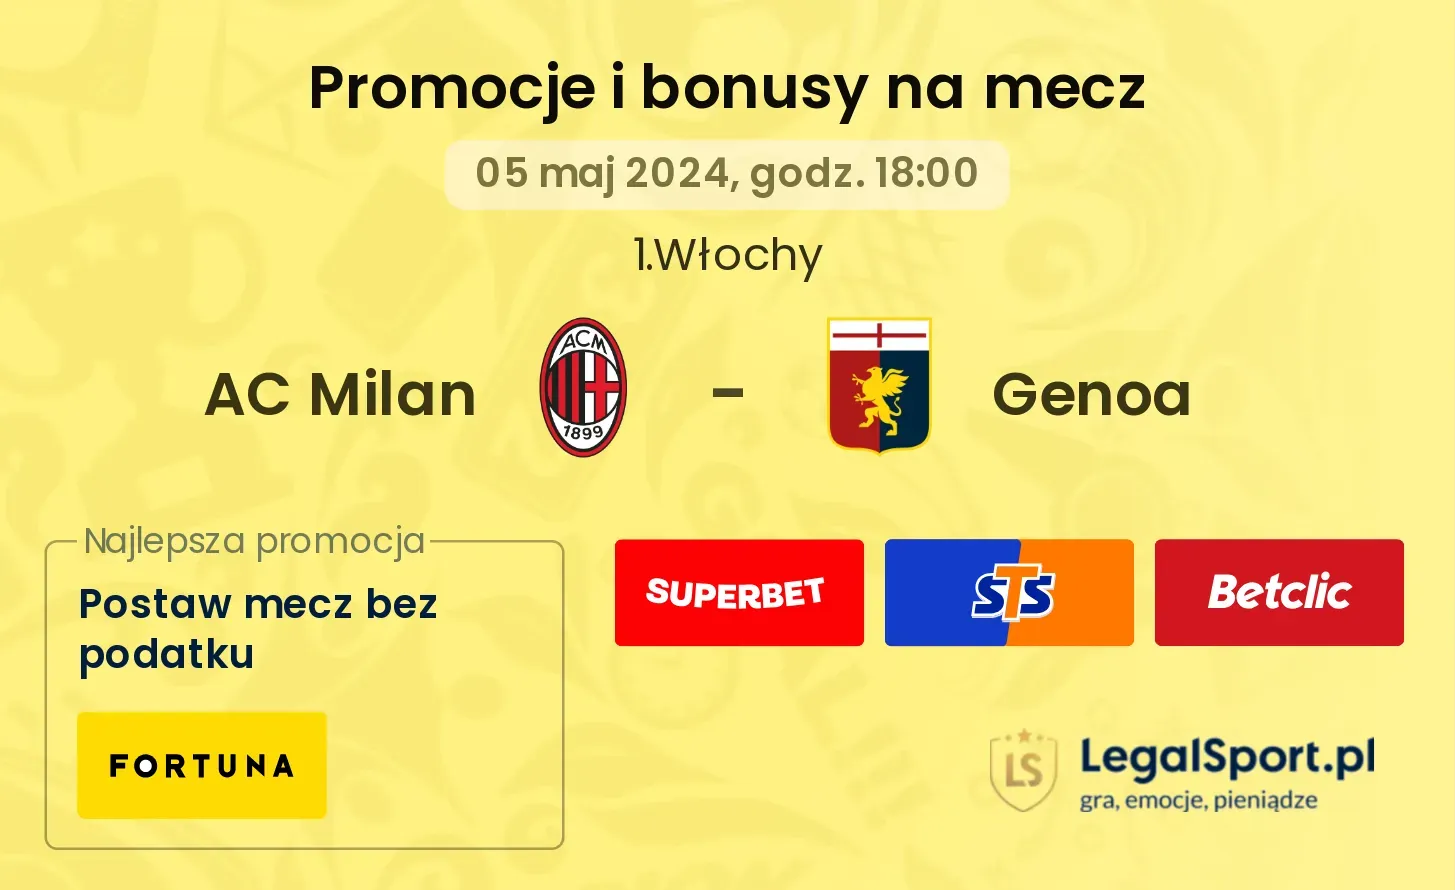 AC Milan - Genoa promocje bonusy na mecz